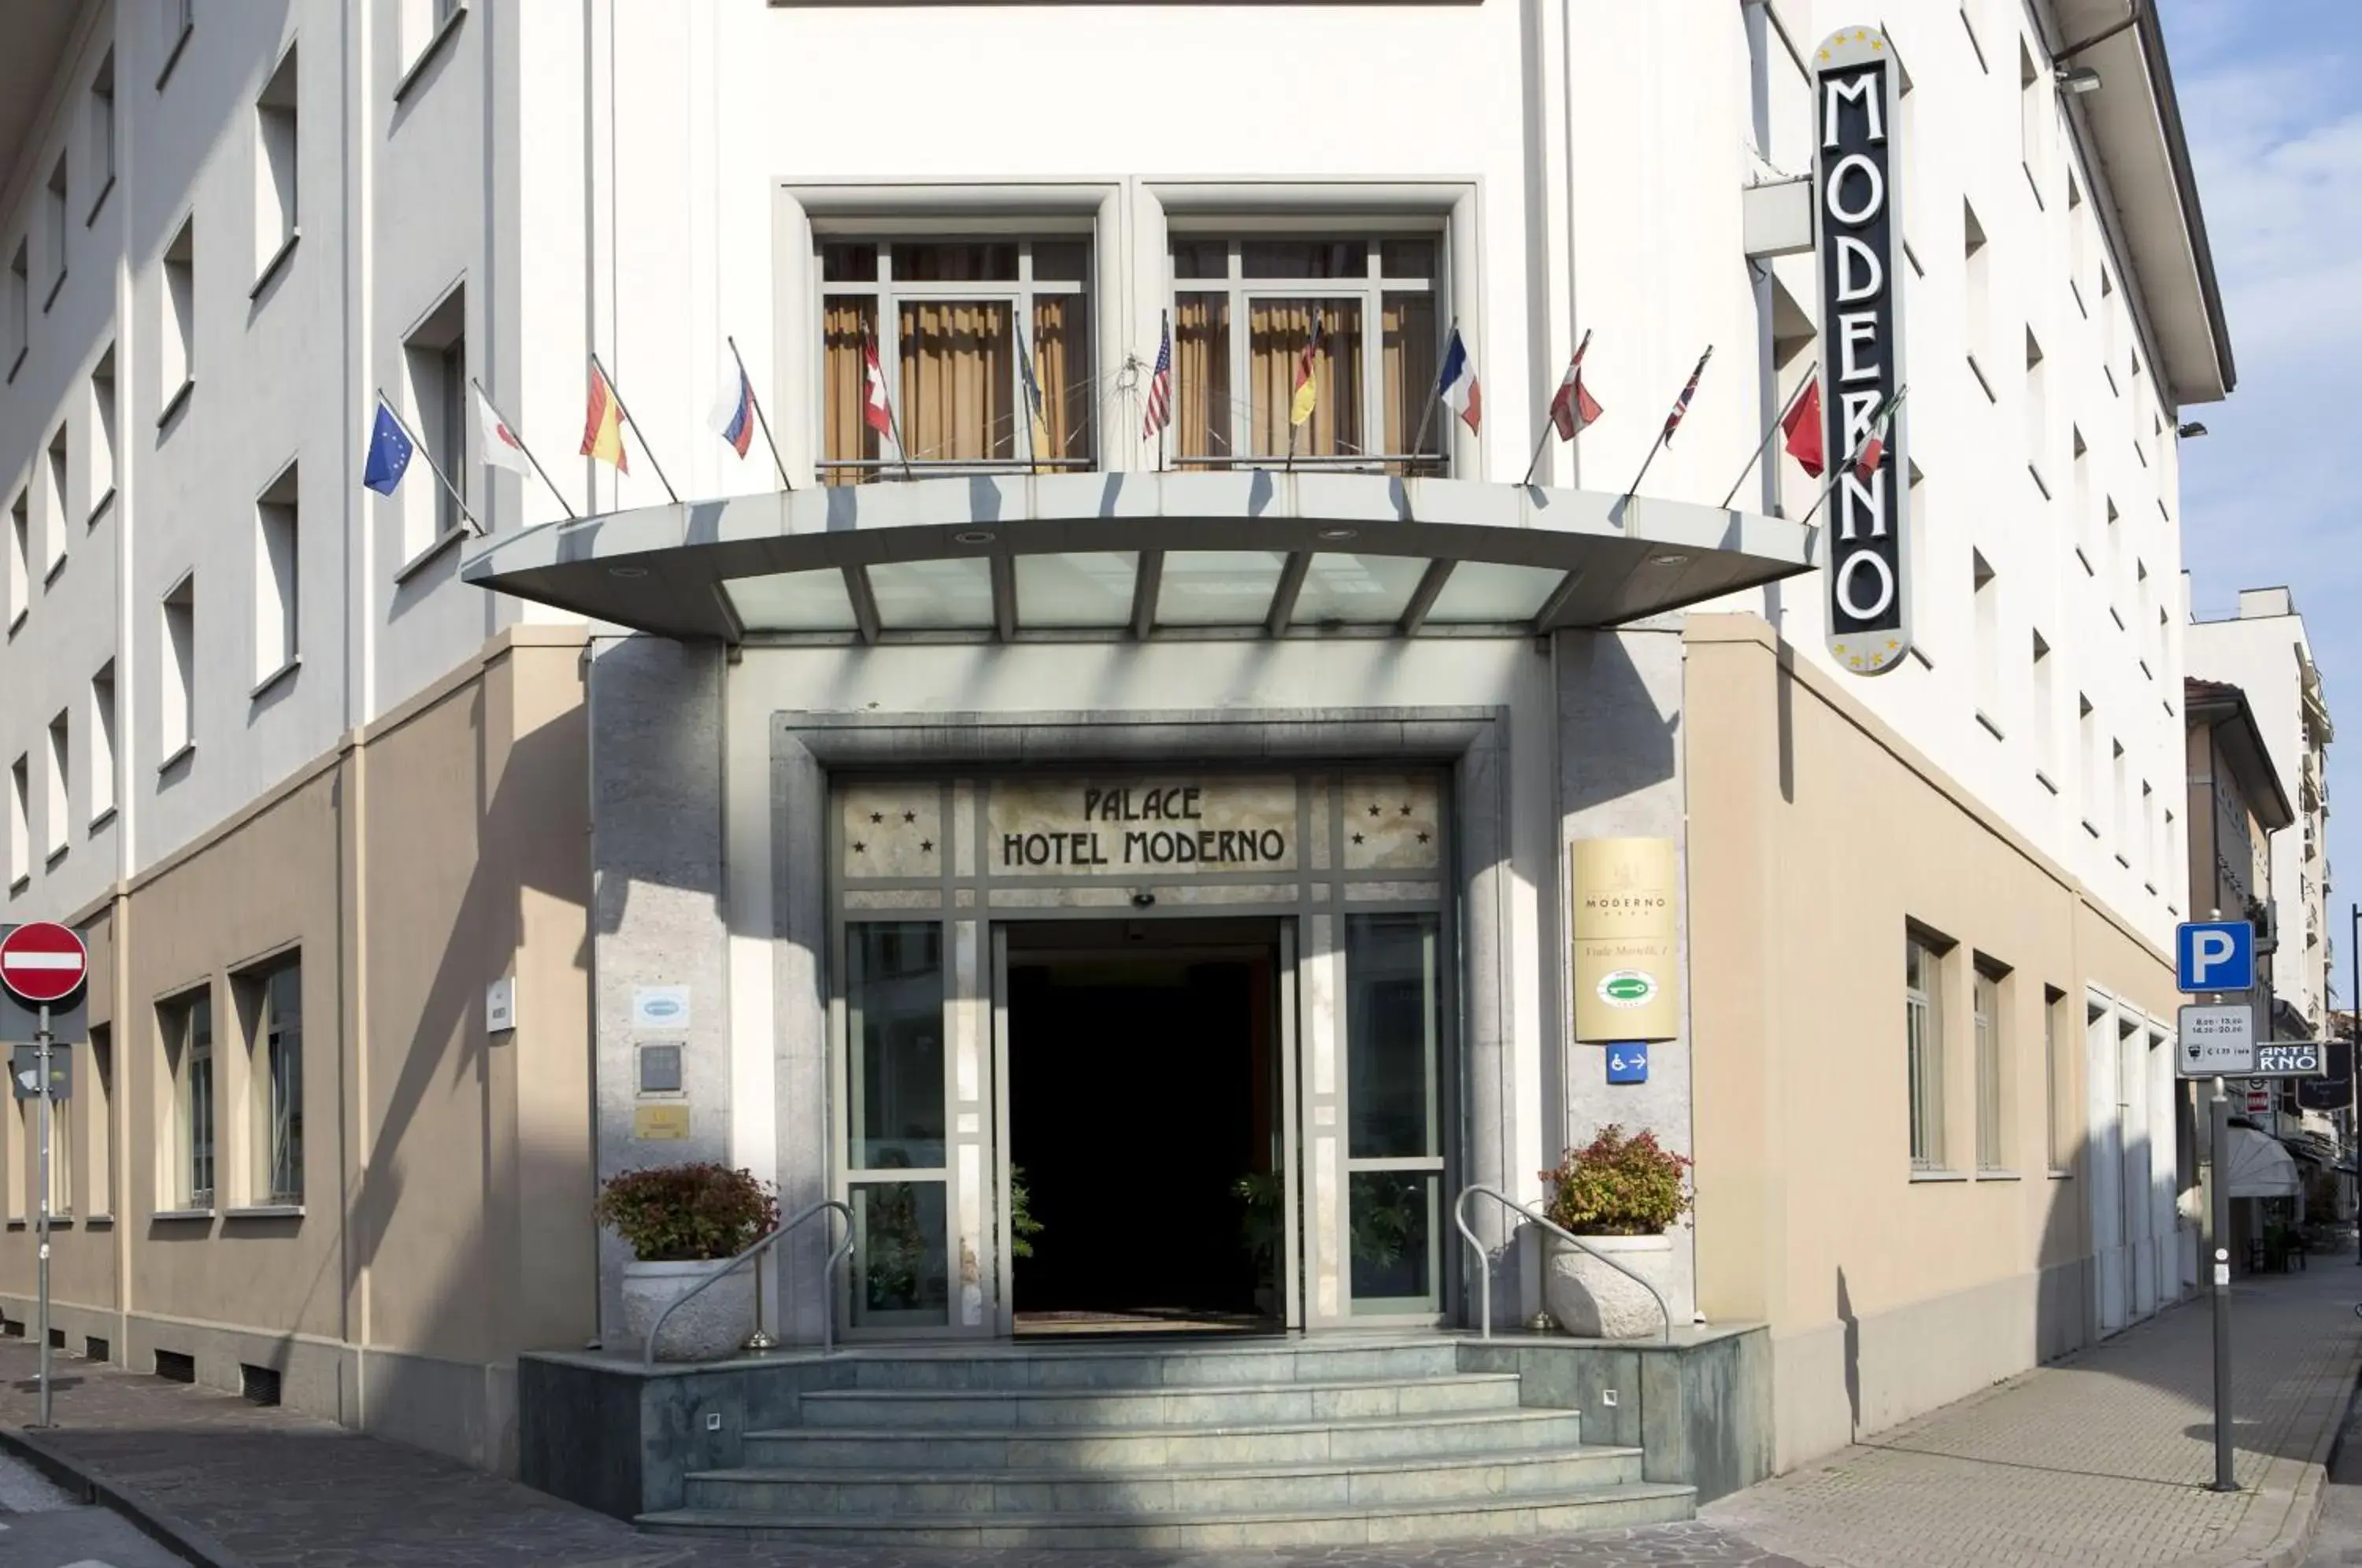 Facade/entrance in Palace Hotel Moderno